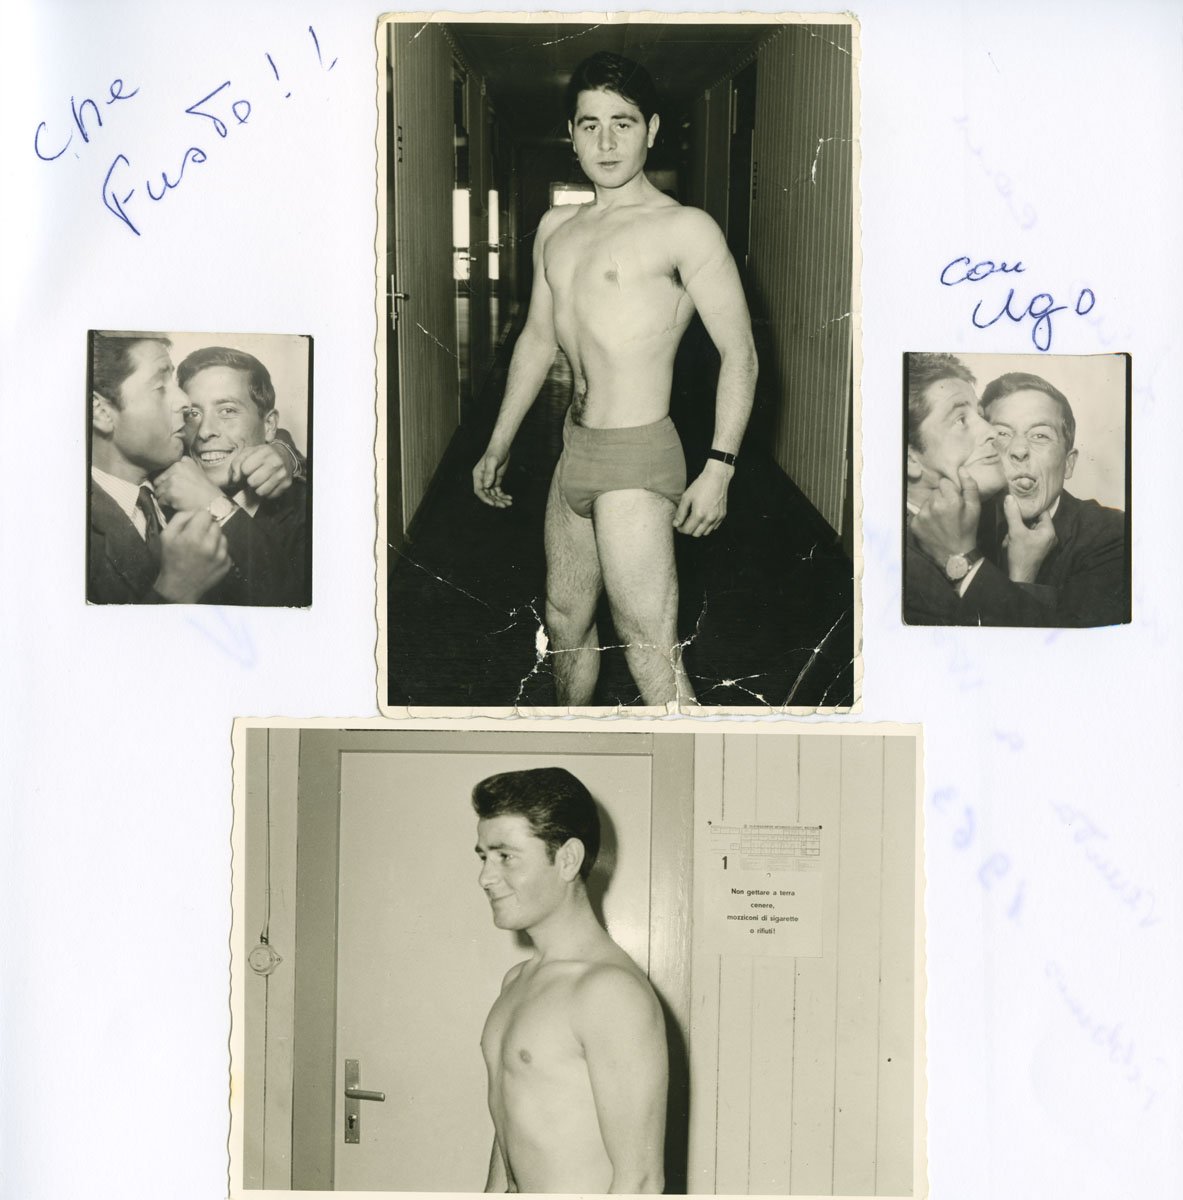 Seite aus Fotoalbum: Ein junger Mann posiert in Badehose in einem Flur, links und rechts Passfotos von zwei jungen Männern, die herumalbern.